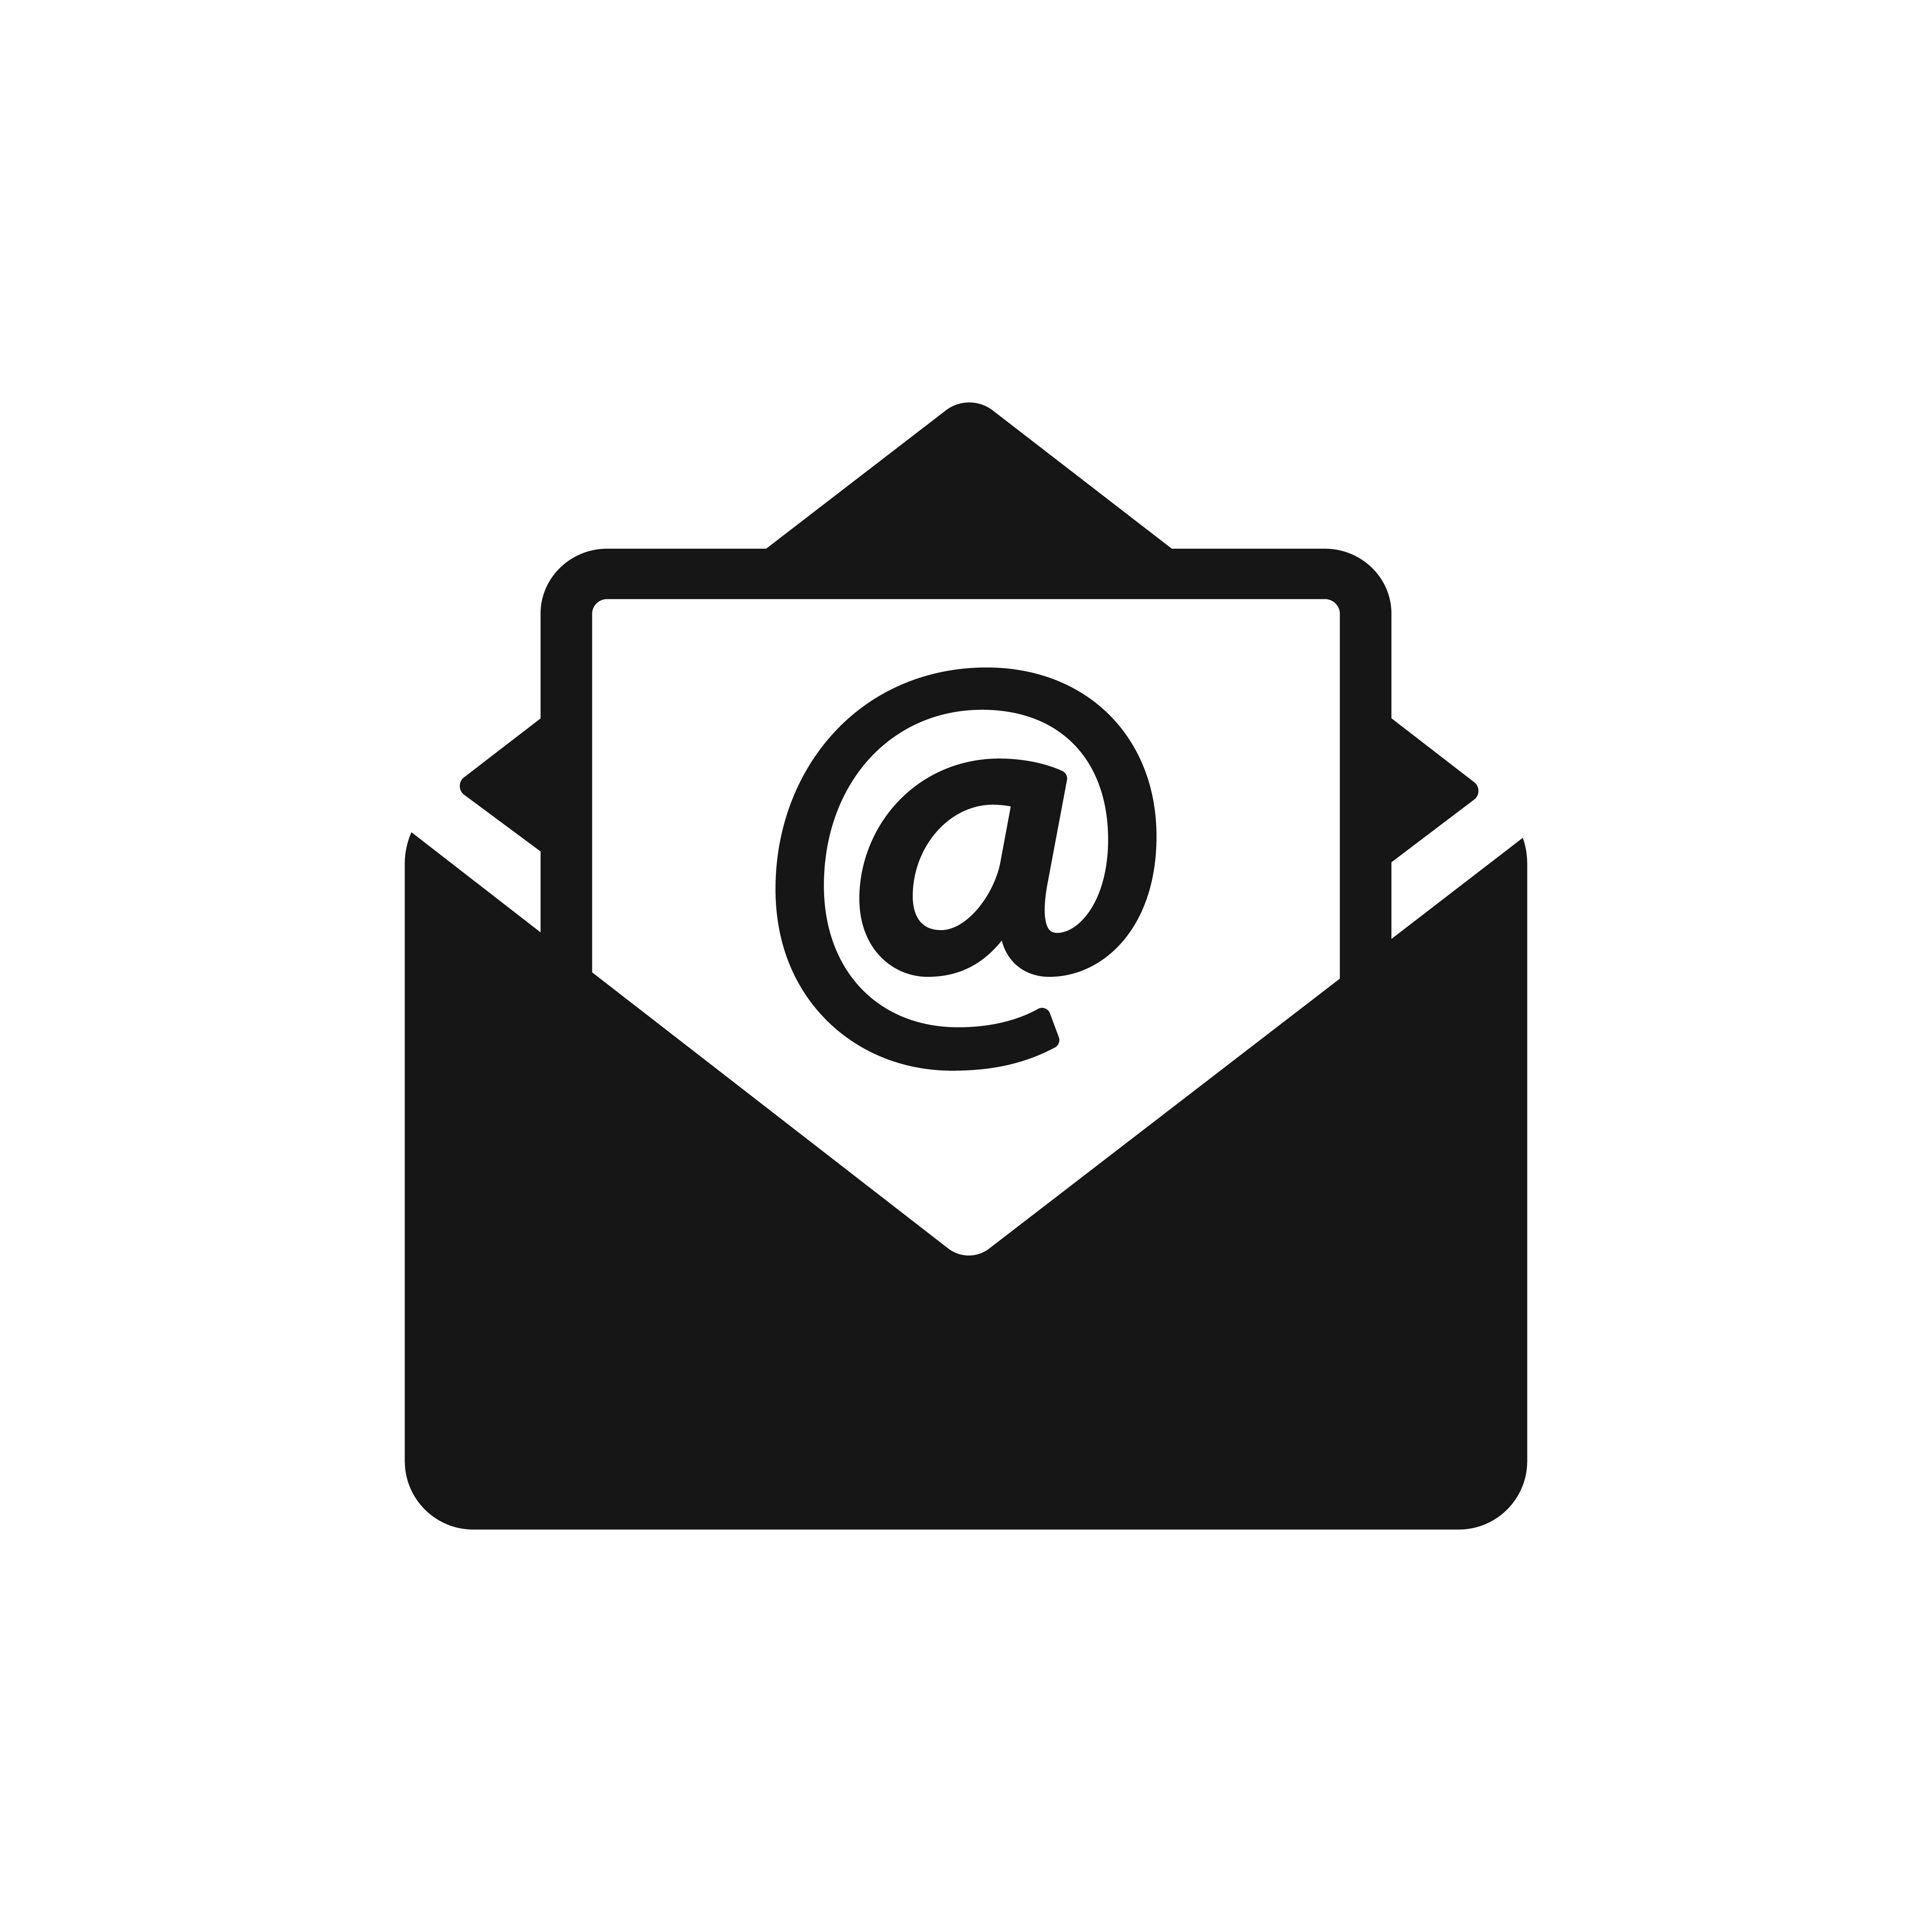 Slika prikazuje internetsku ikonu za elektroničku poštu